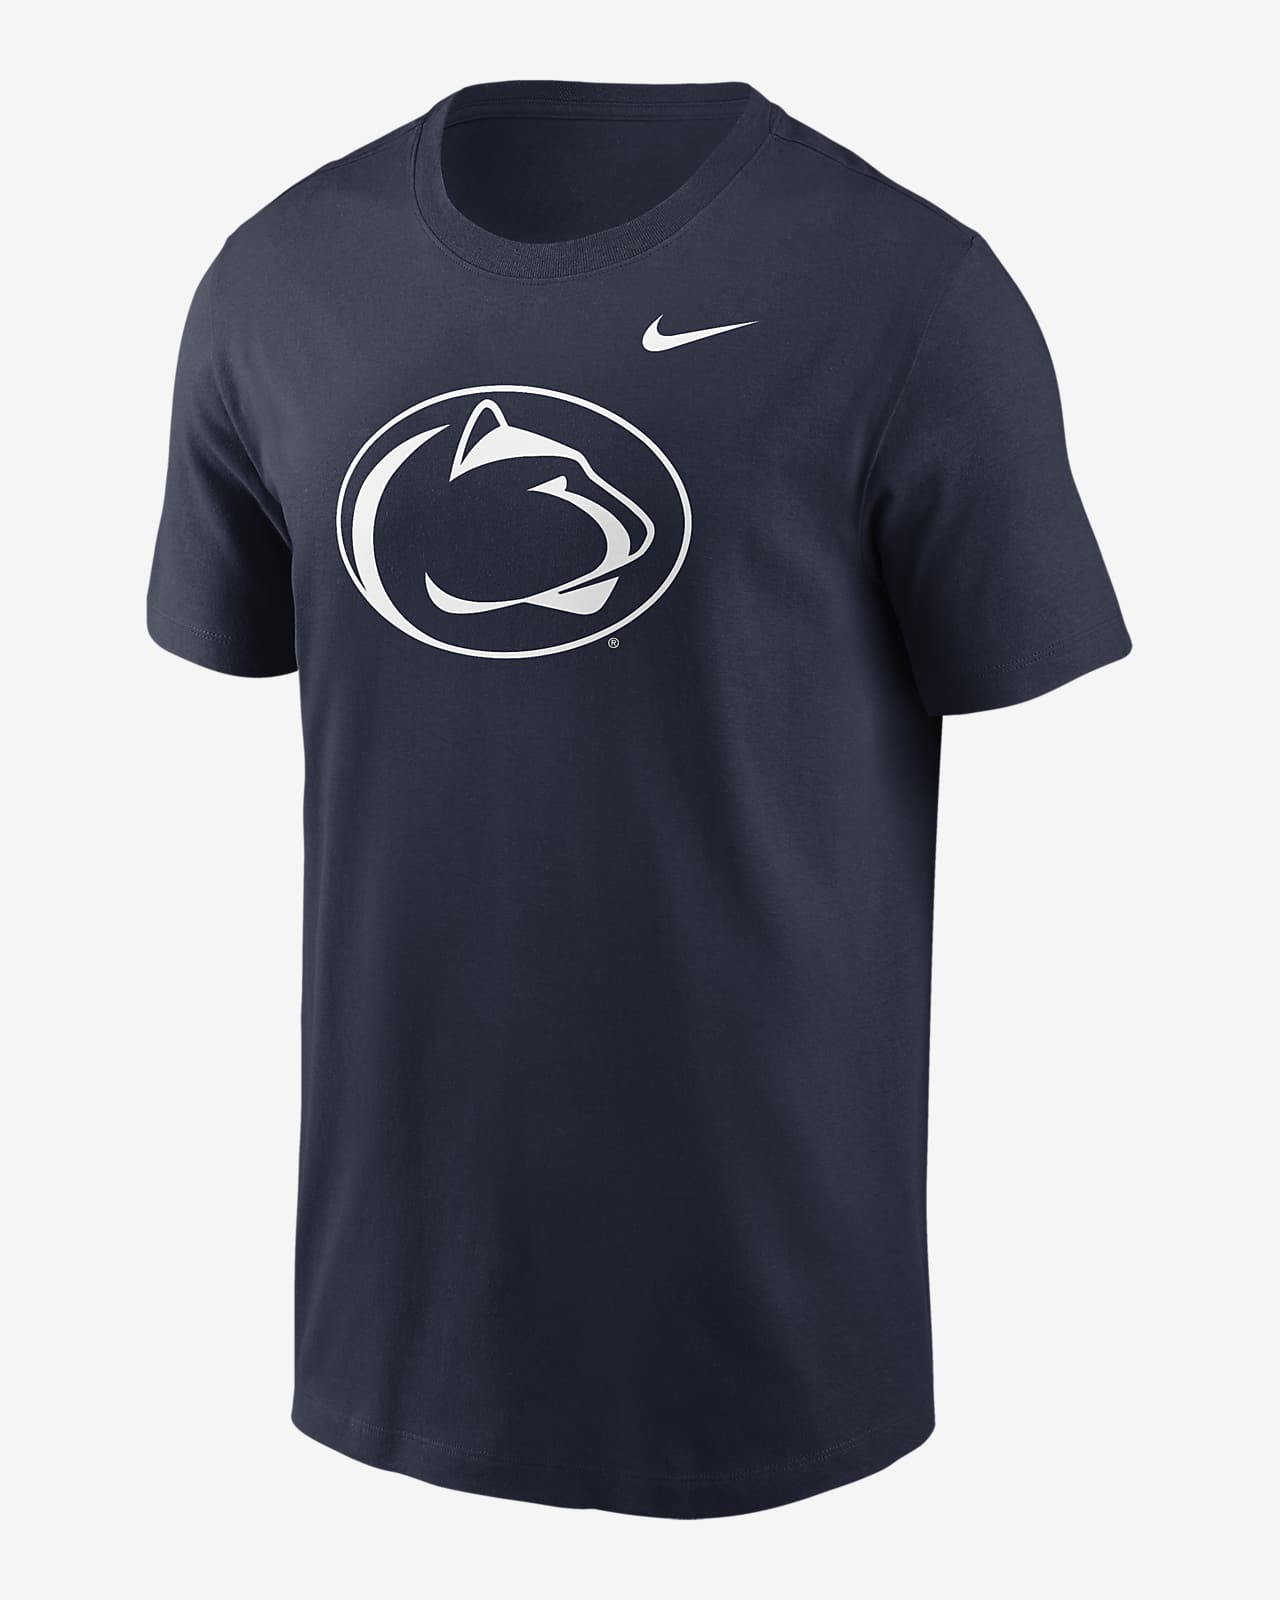 Penn State Nittany Lions Primetime Evergreen Logo Men's Nike College T-Shirt